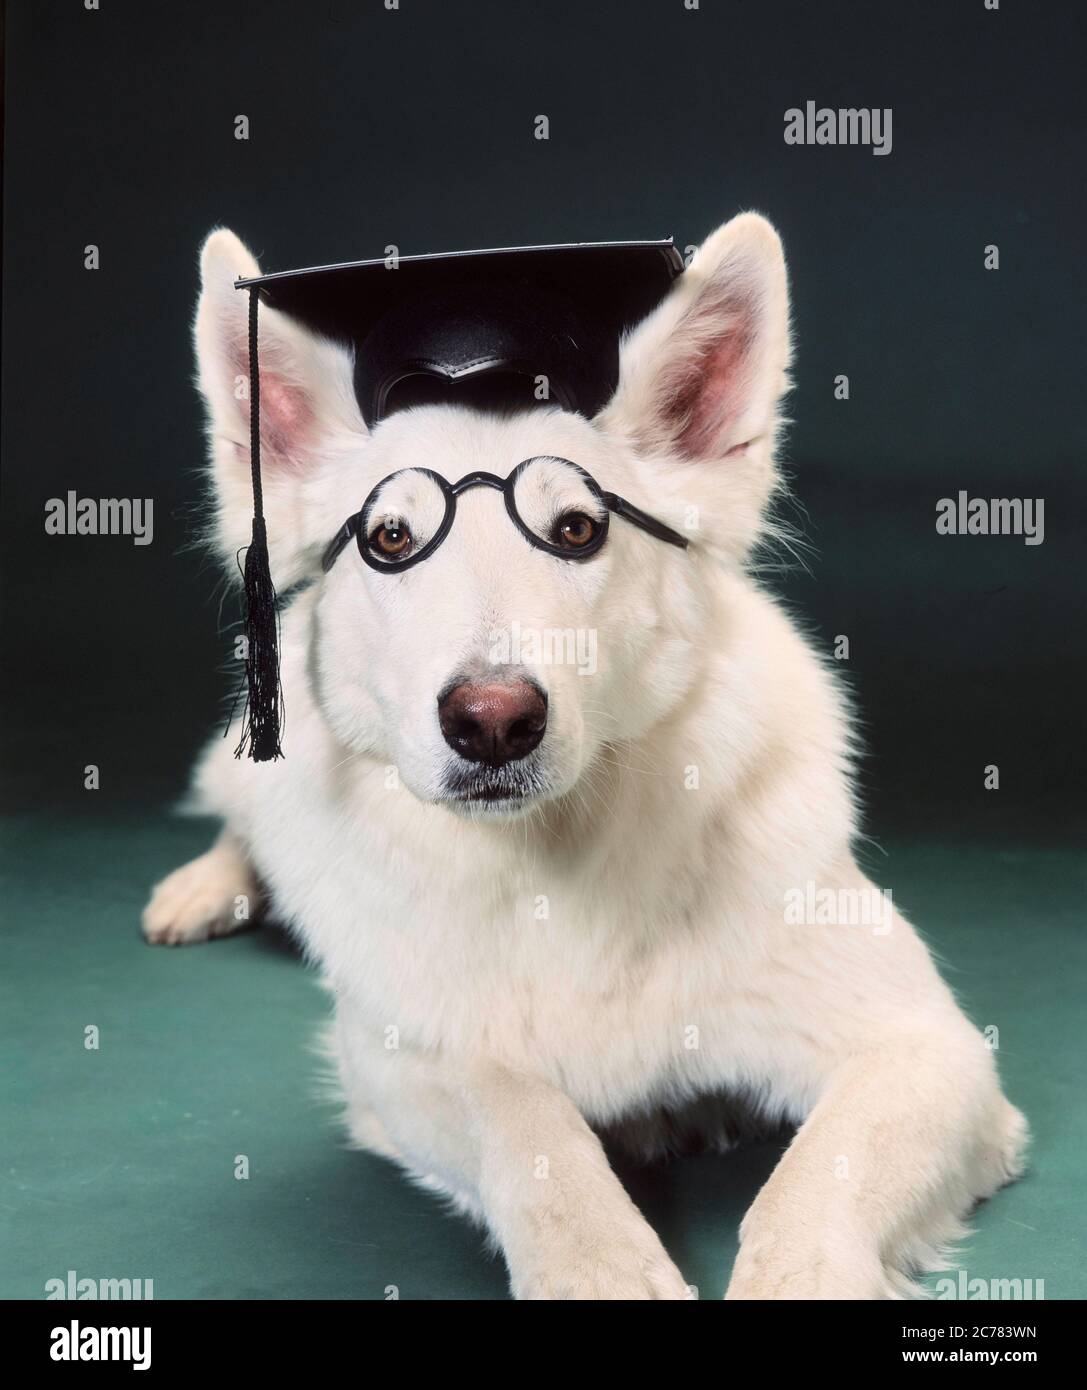 Berger blanc Suisse, Berger blanc suisse. Un chien adulte avec un mortaboard et des lunettes couché devant un fond vert. Allemagne Banque D'Images